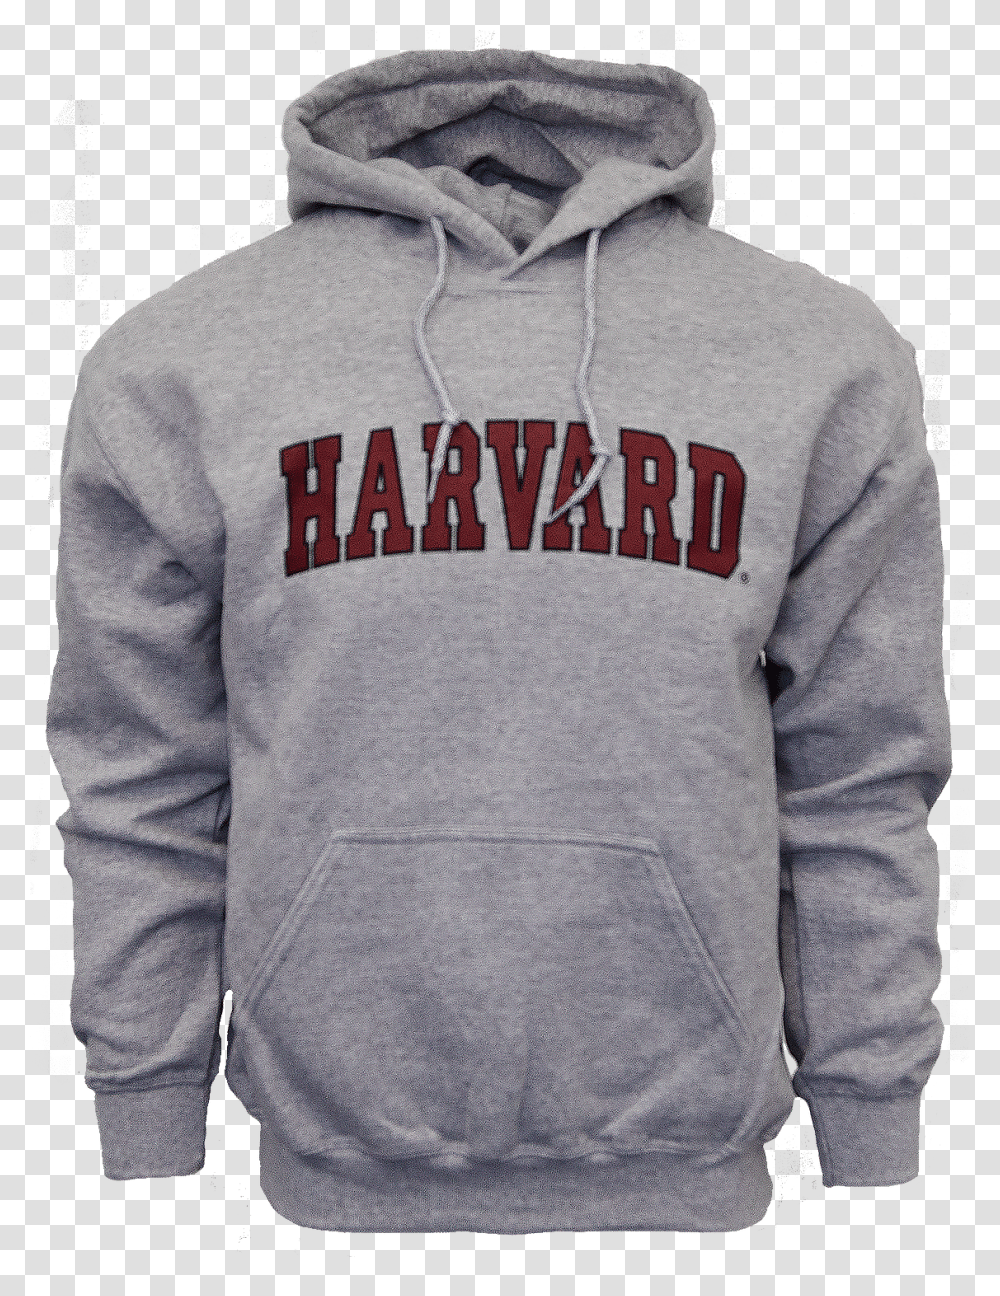 Harvard Hooded Arc Sweatshirt Hoodie, Apparel, Sweater, Sleeve Transparent Png